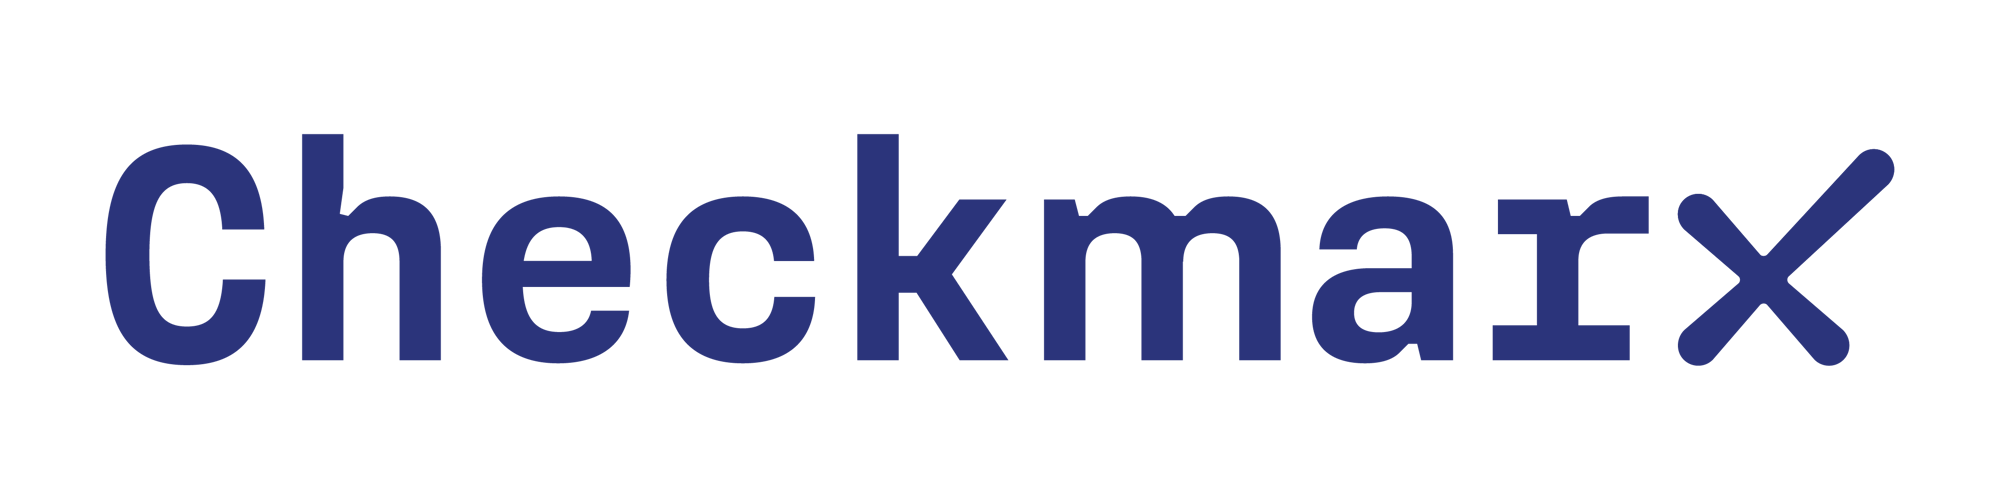 Checkmarx Logo - RGB Blue